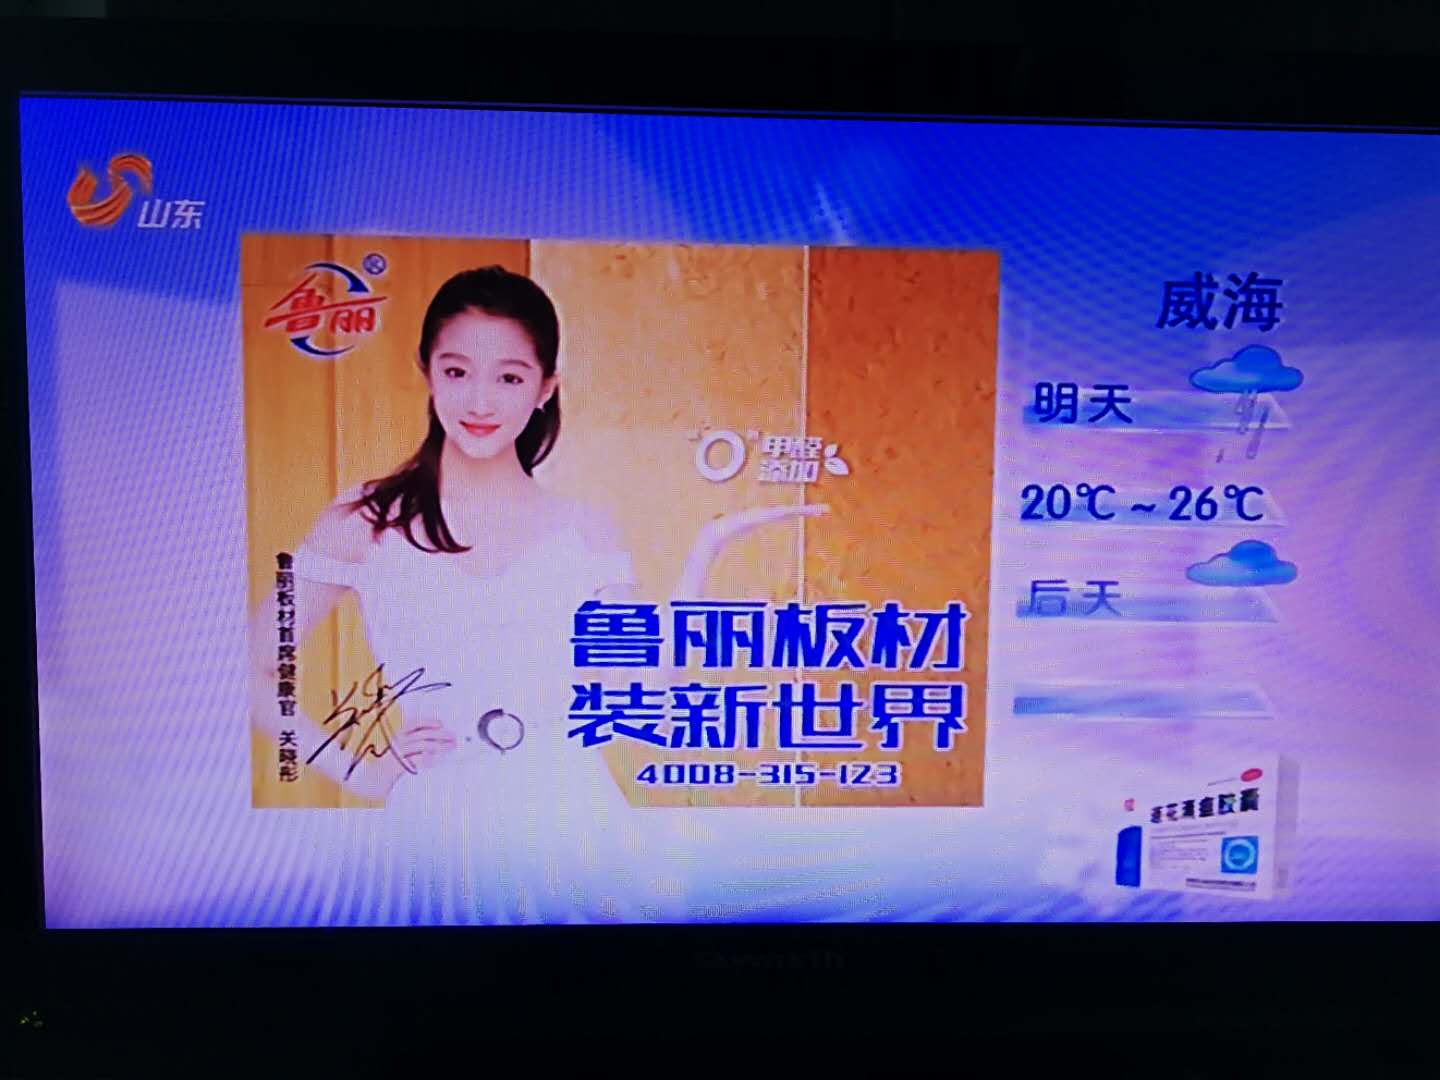 山东卫视 广告2009图片